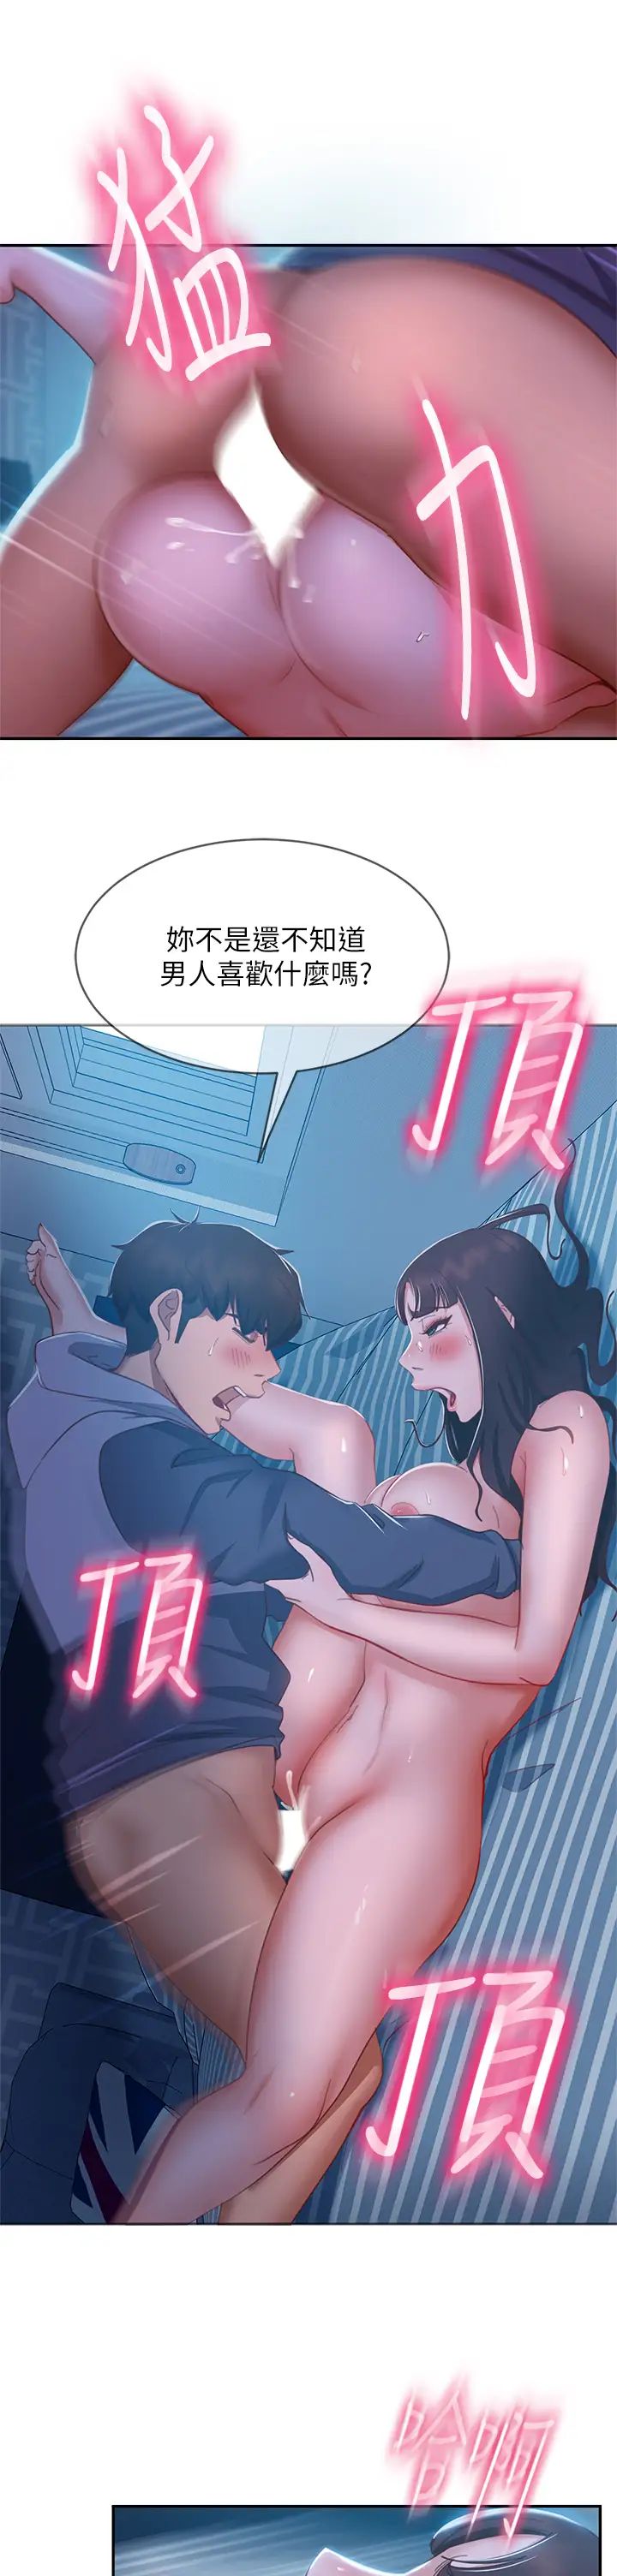 韩国污漫画 不良女房客 第50话射满娜丽的嘴巴 24